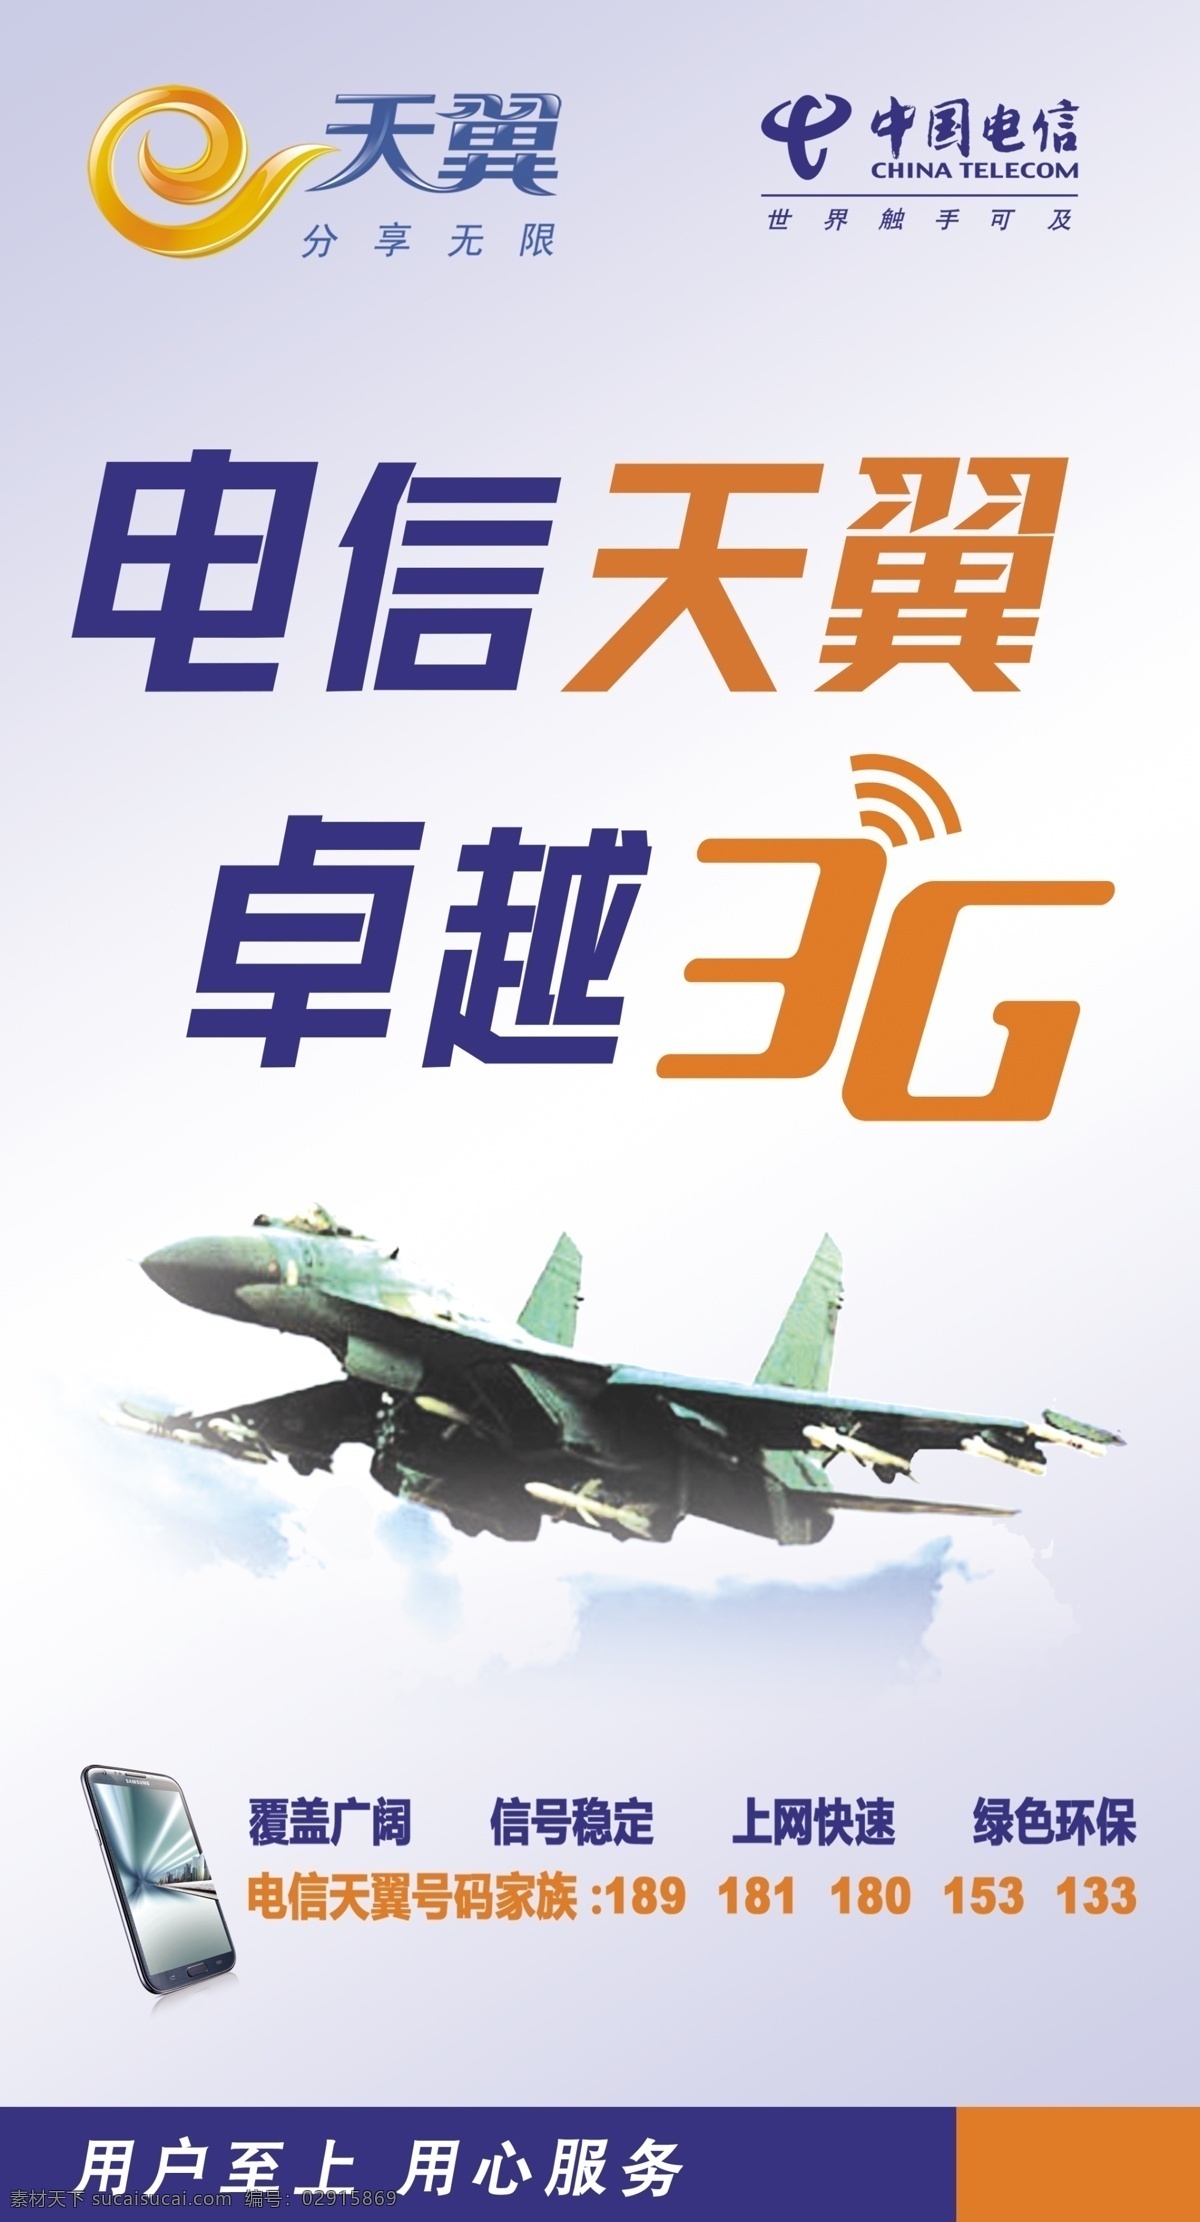 中国电信 展架 3g 电信天翼 广告设计模板 天翼 源文件 展板模板 中国电信展架 卓越3g 矢量图 现代科技